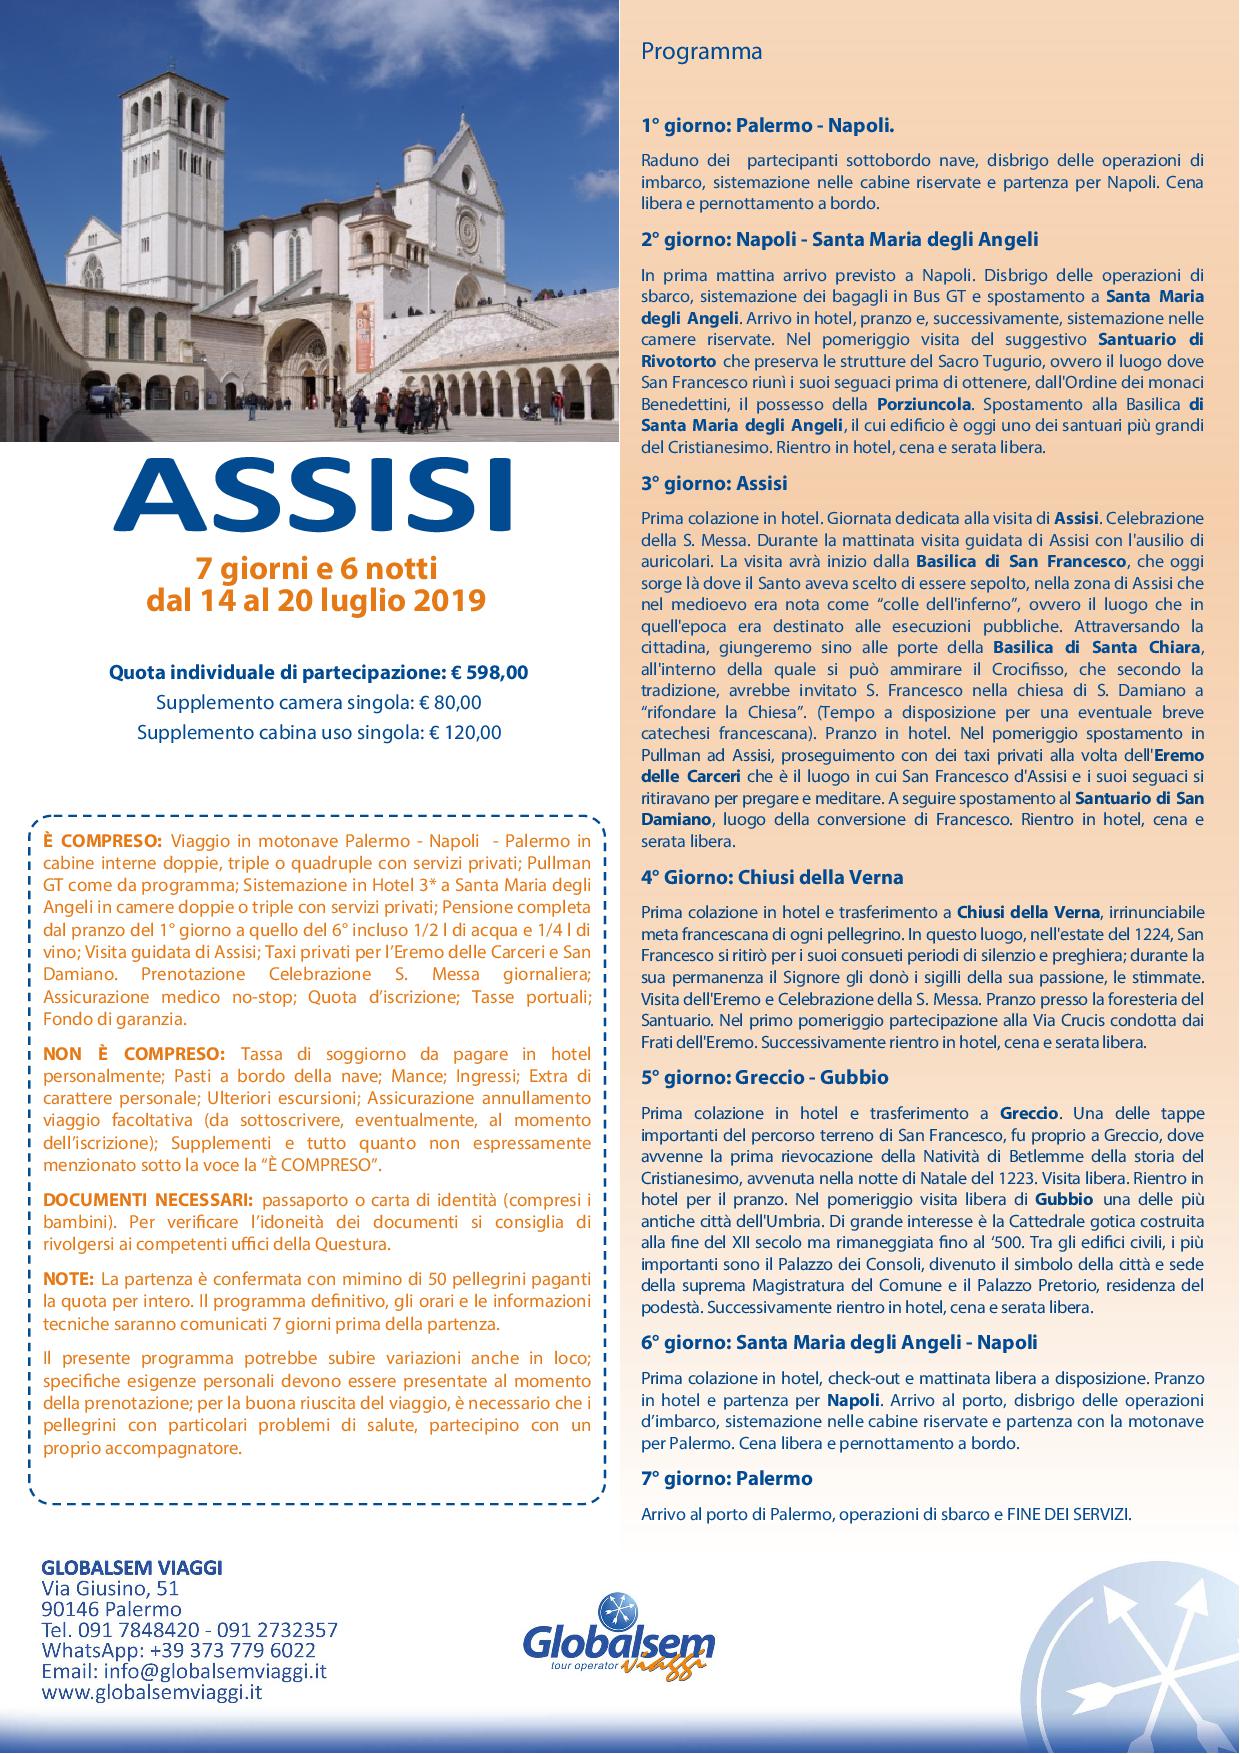 Assisi, Chiusi della Verna, Greccio, Gubbio, Pellegrinaggio da Palermo dal 14 al 20 luglio 2019